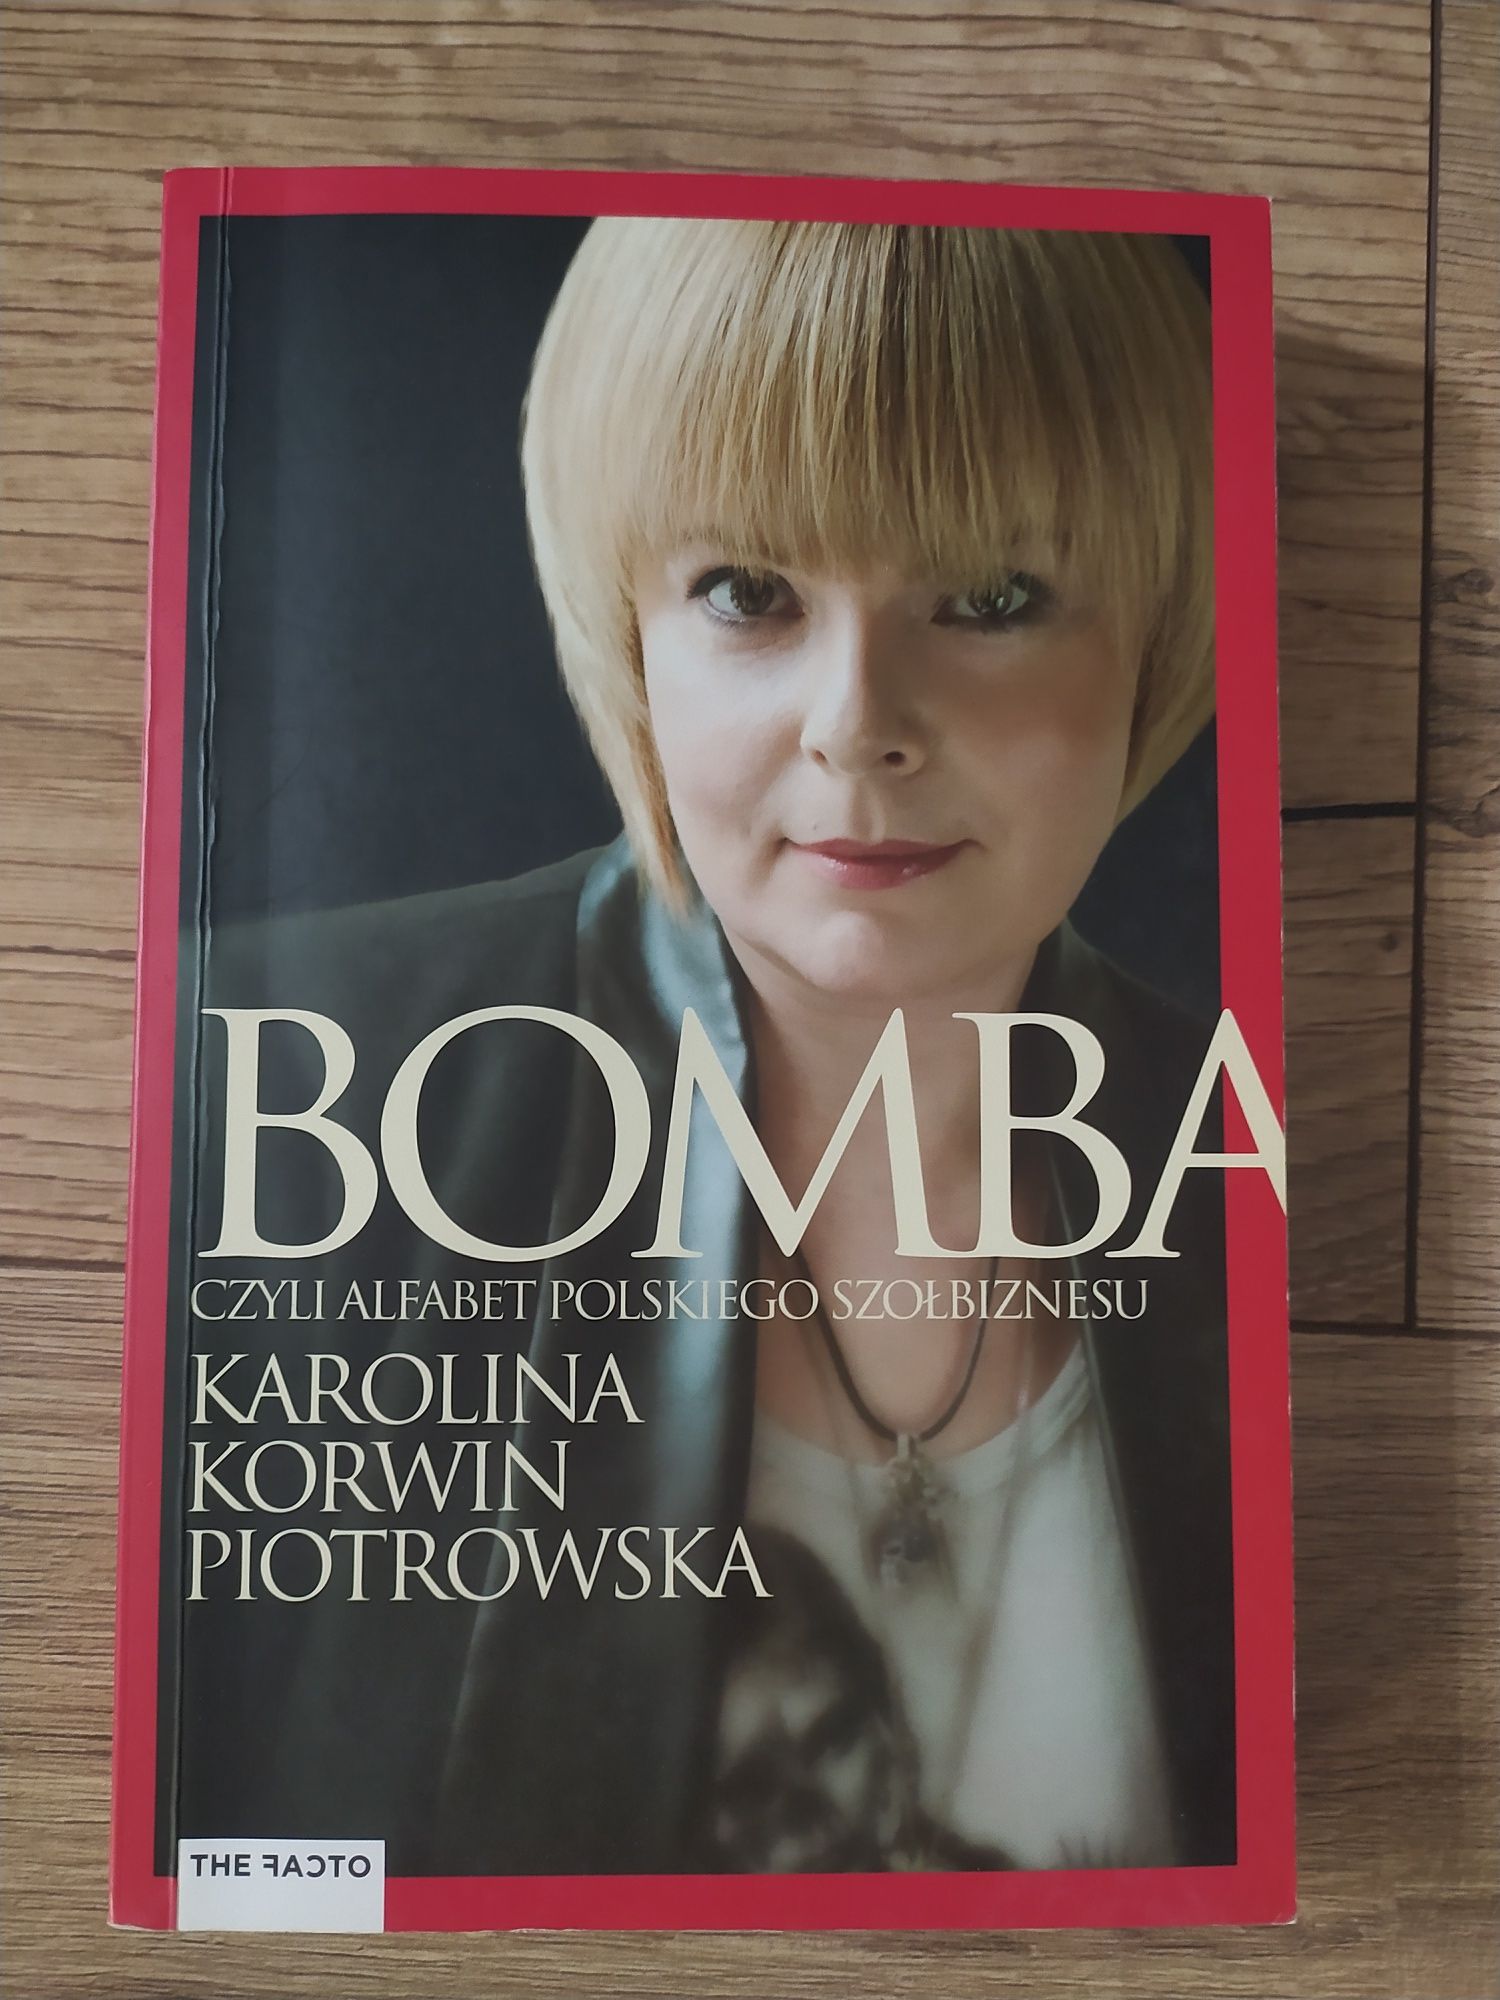 "Bomba" Karolina Korwin-Piotrowska"